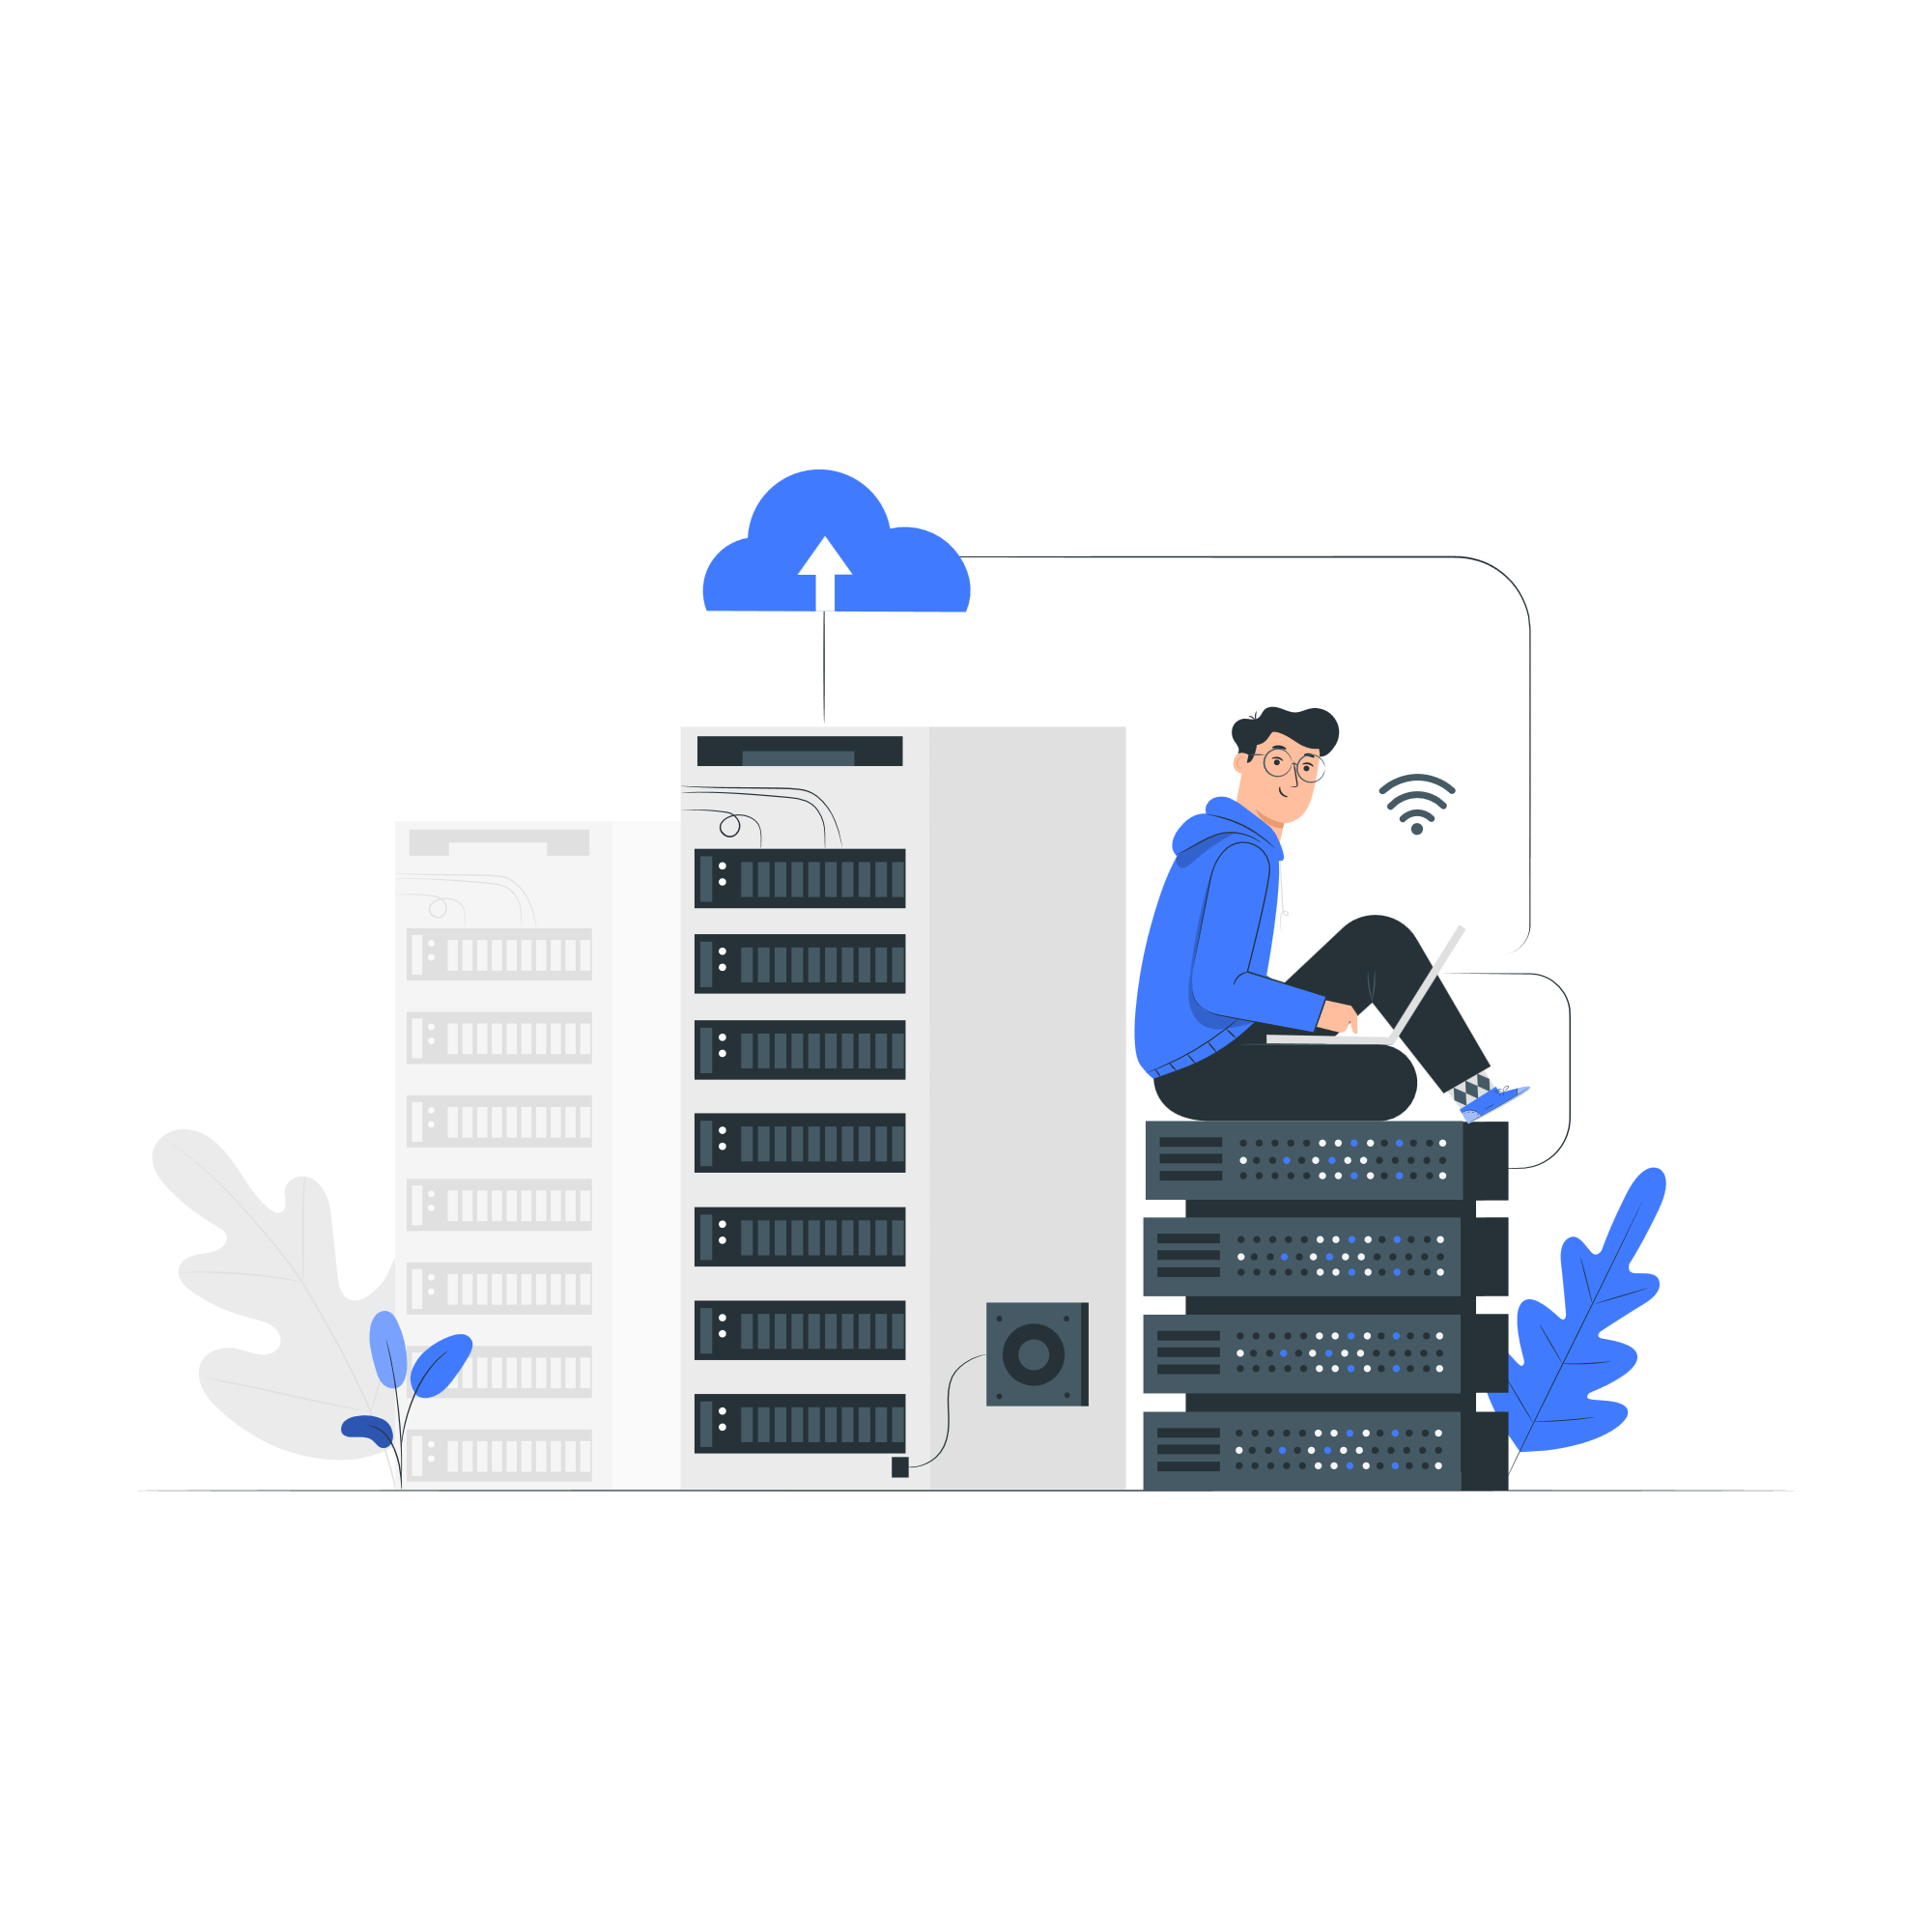 Bei der Datenspeicherung setzen wir auf sichere und zuverlässige Cloudspeicher, um sicherzustellen, dass Ihre Daten immer geschützt und verfügbar sind. Wir bieten automatische Backups und skalierbare Speicherlösungen, um sicherzustellen, dass Ihre Daten immer sicher und verfügbar sind.